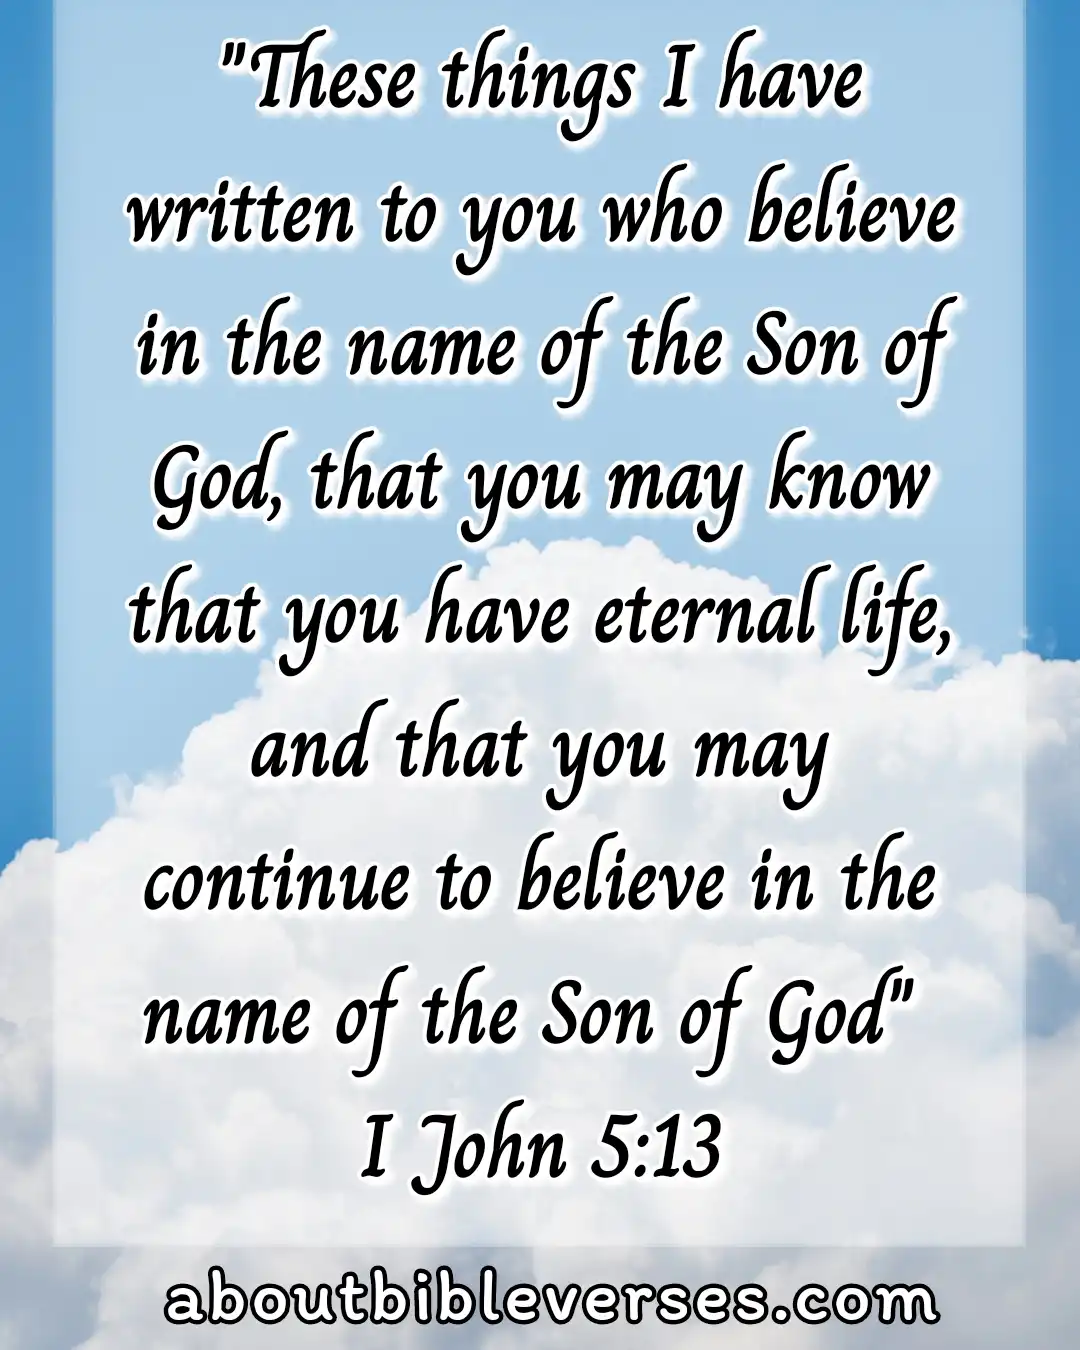 Todaybible verse (1 John 5:13)